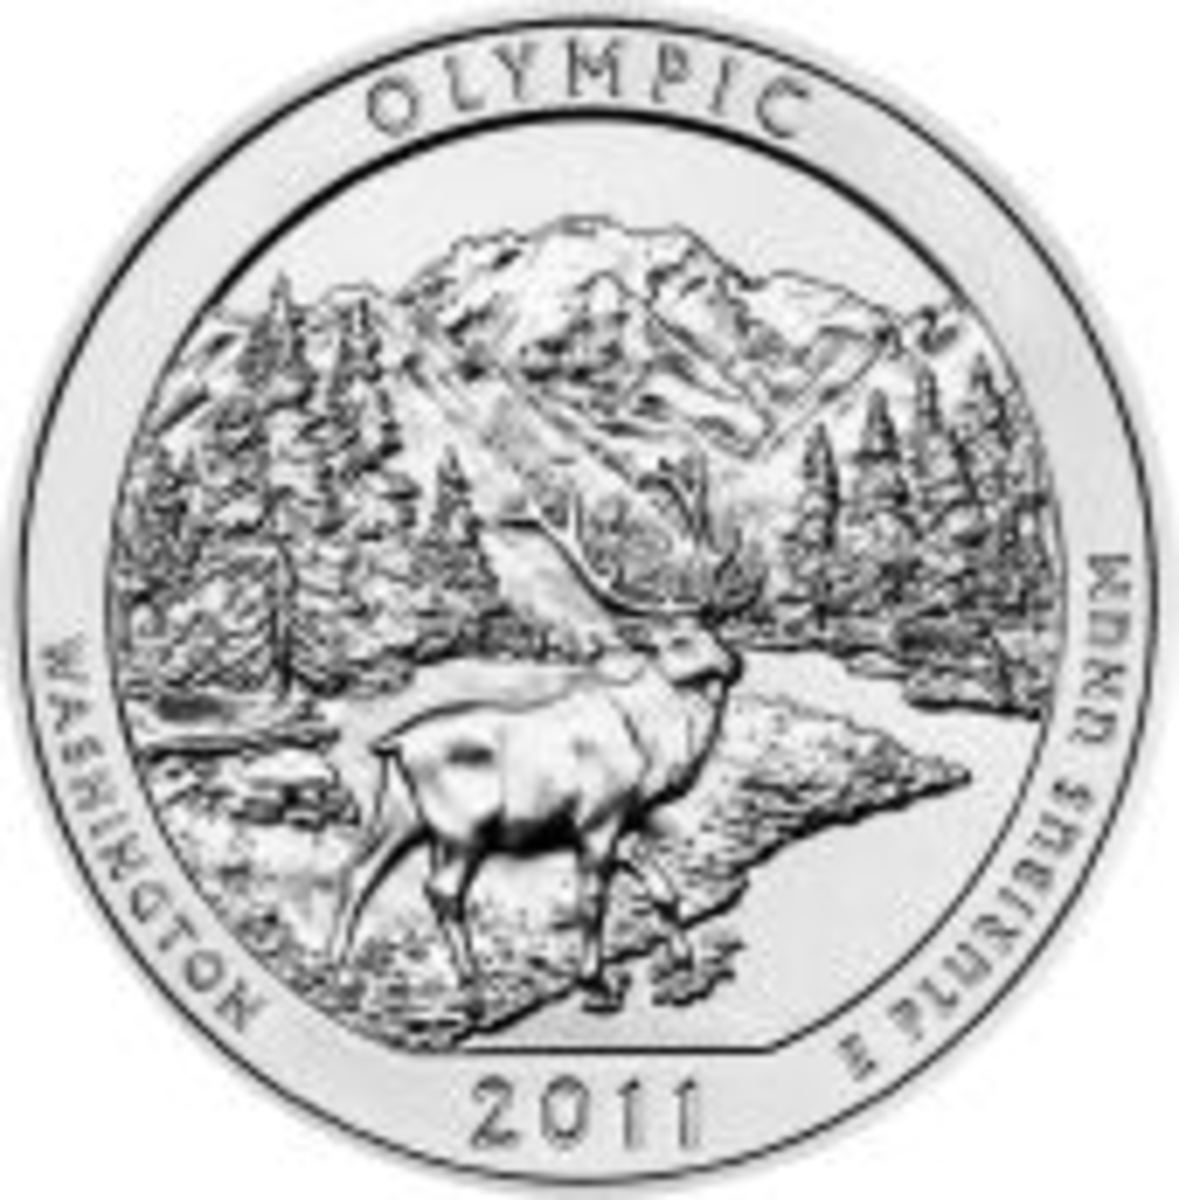 Olympic national park silver bullion coin